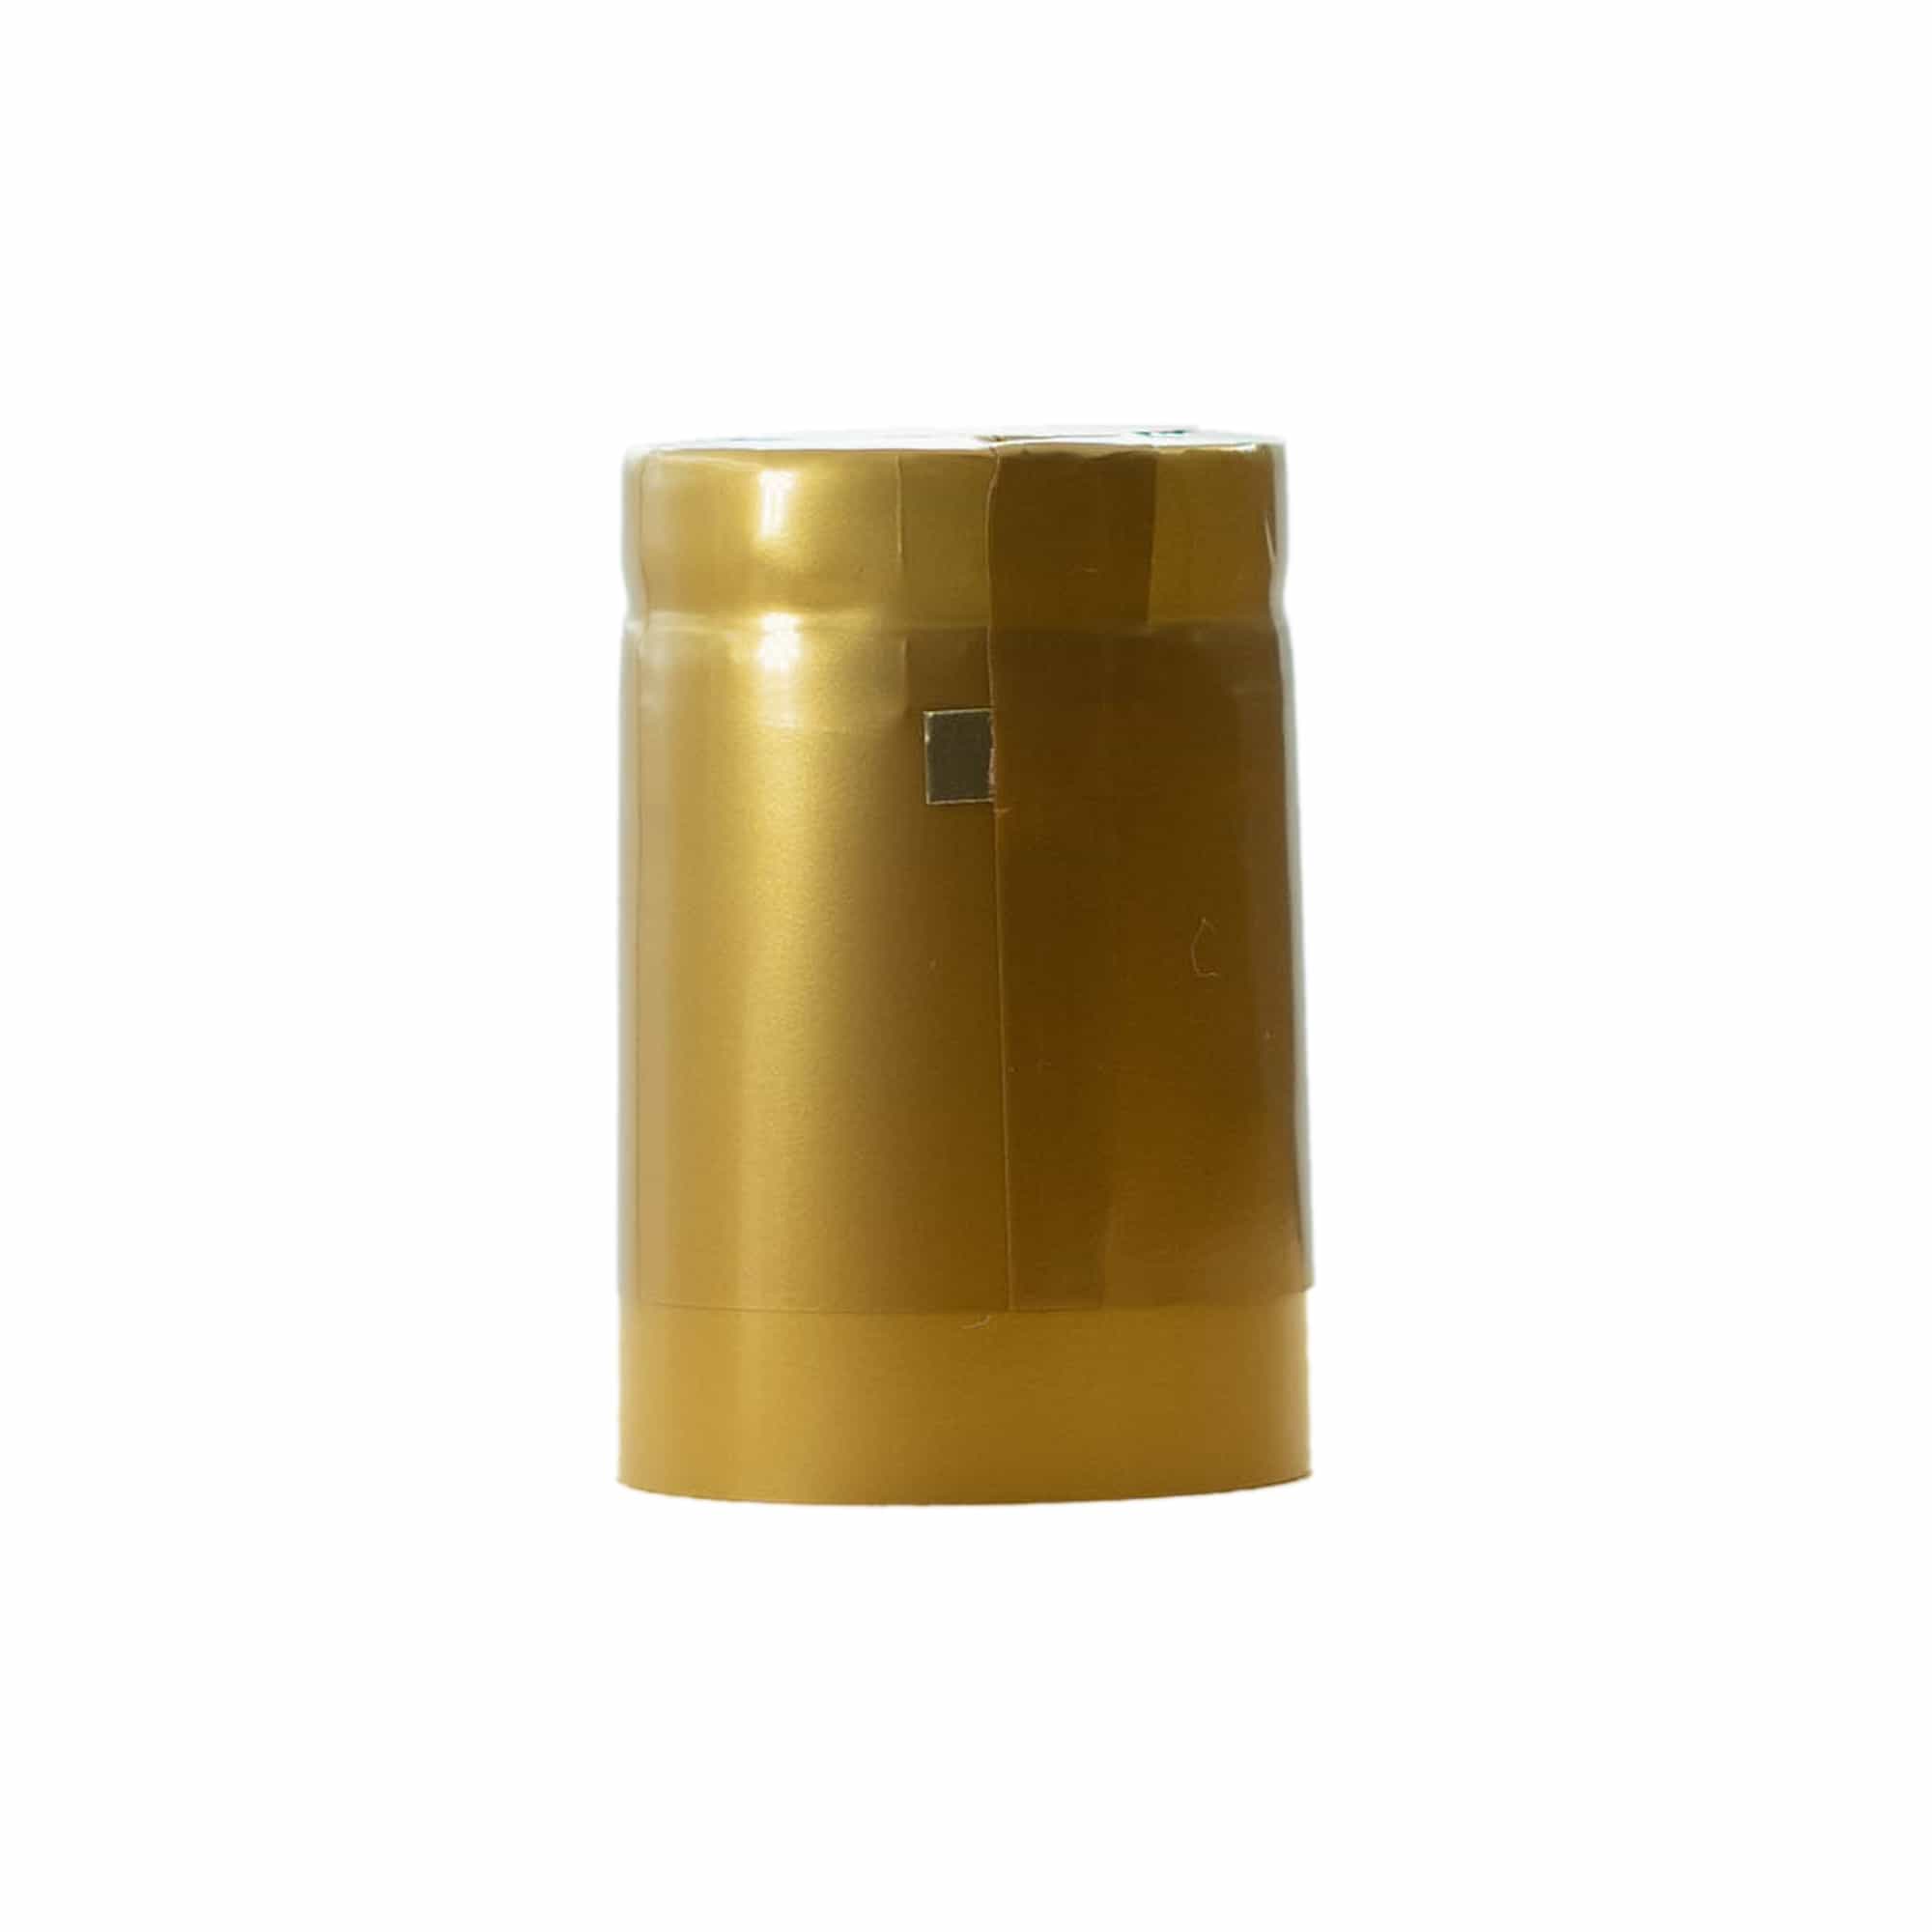 Capsula termoretraibile 32x41, plastica PVC, oro